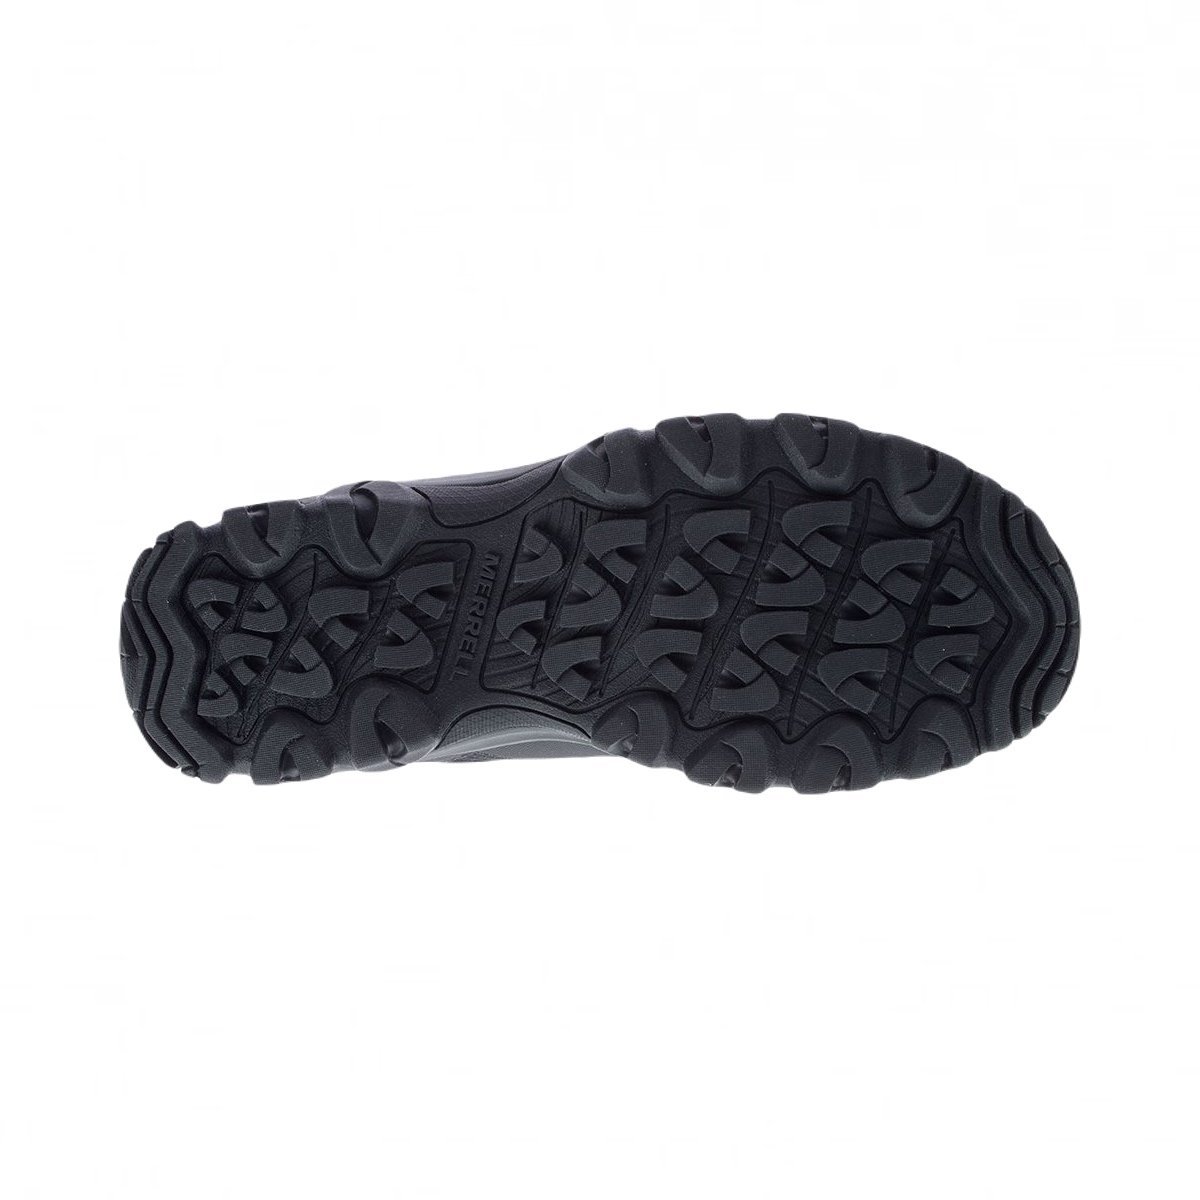 Взуття Merrell Ice Cap Mid Lace 5 M - чорне / сіре